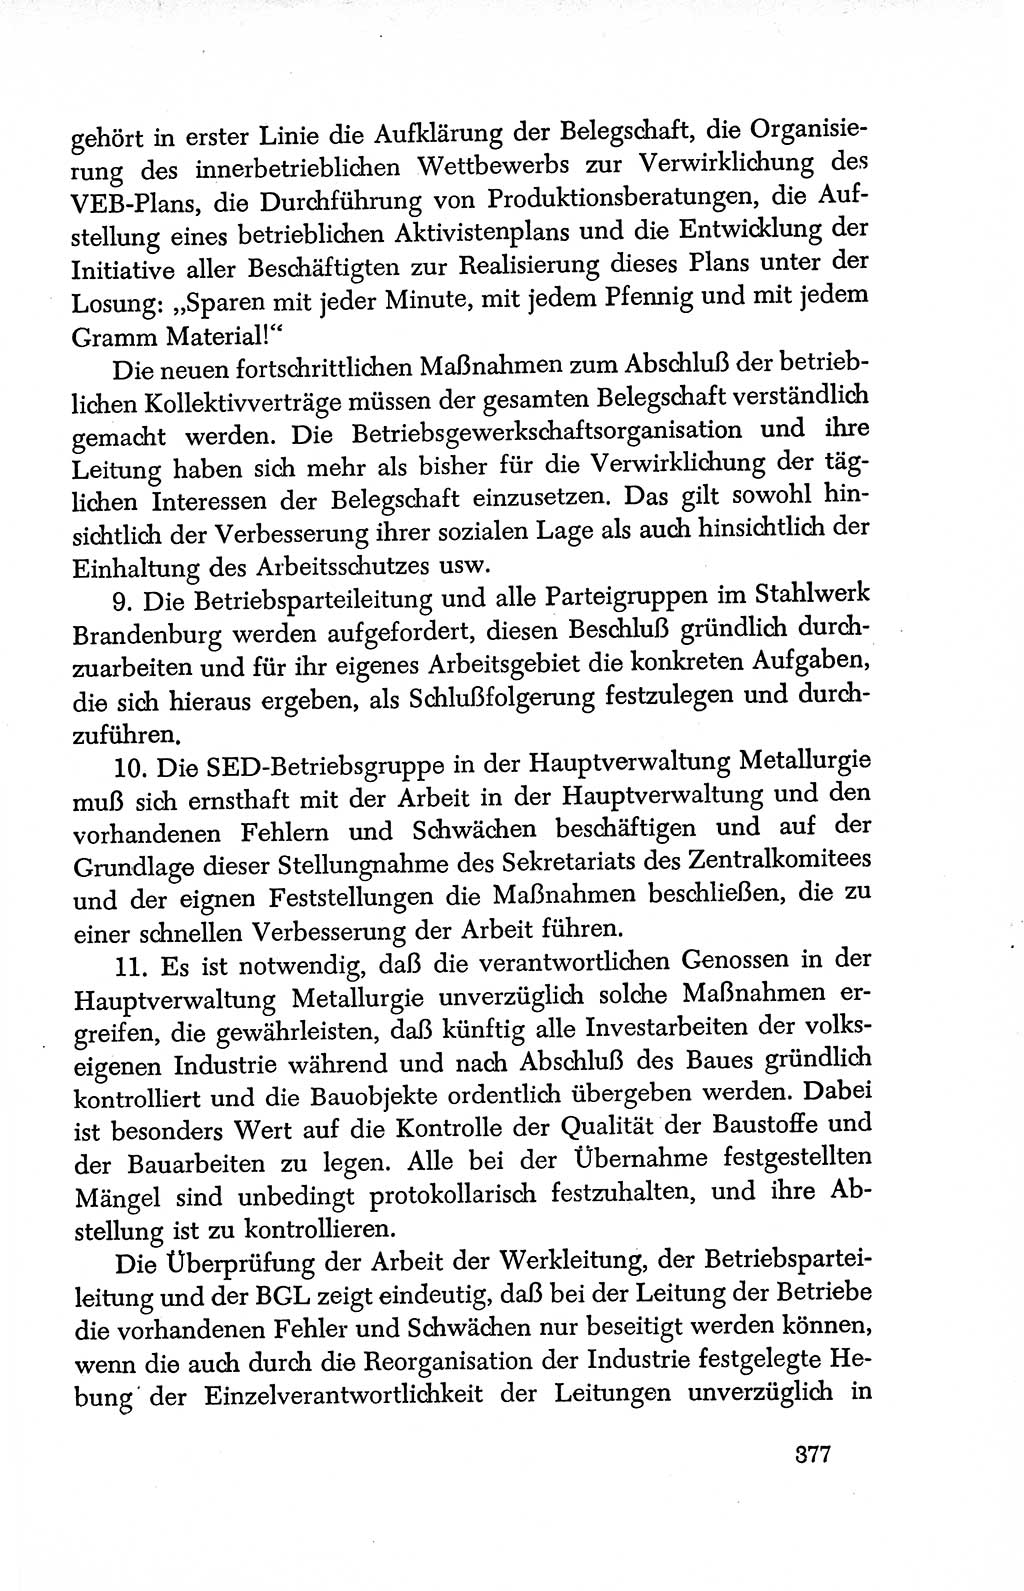 Dokumente der Sozialistischen Einheitspartei Deutschlands (SED) [Deutsche Demokratische Republik (DDR)] 1950-1952, Seite 377 (Dok. SED DDR 1950-1952, S. 377)